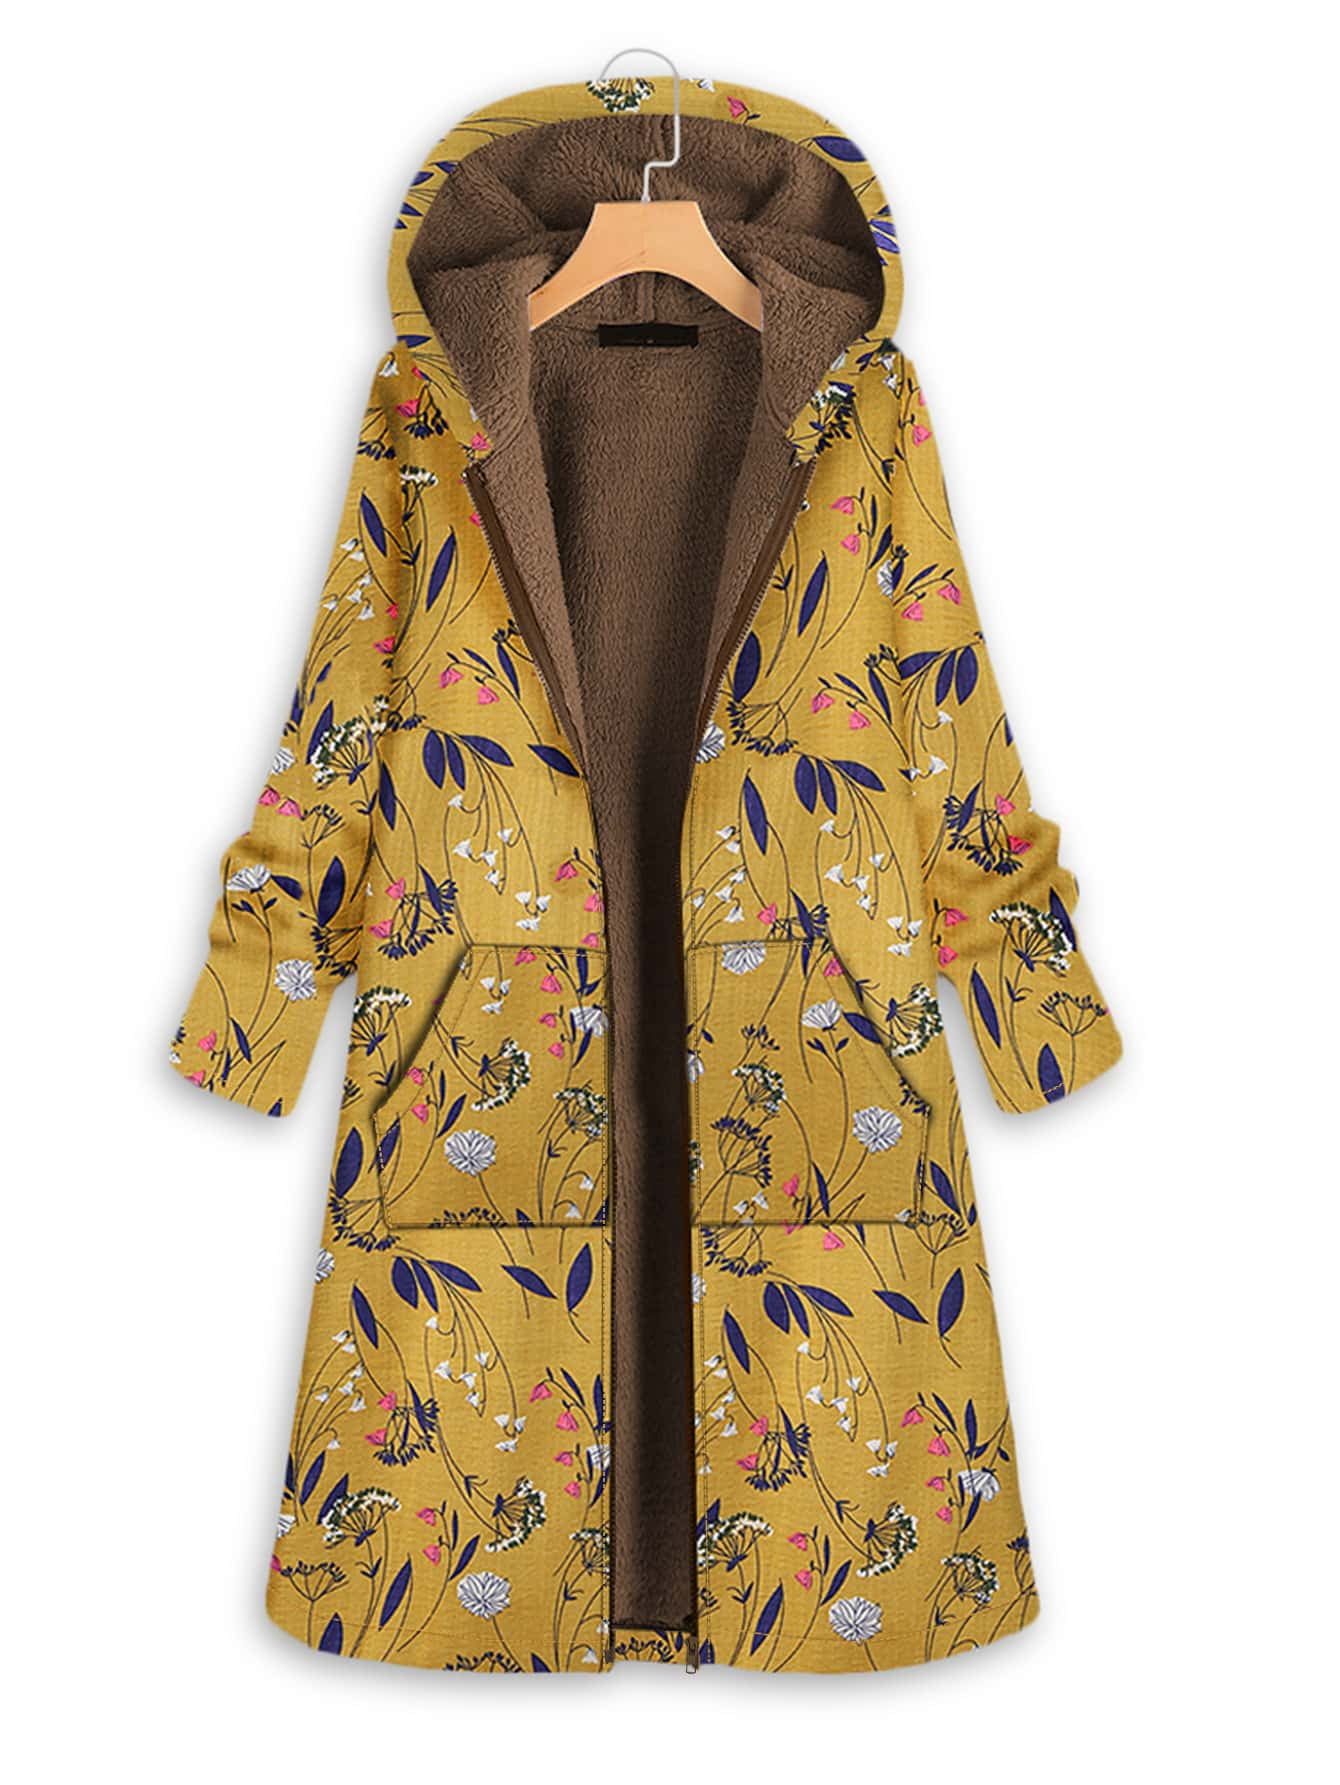 ERTG Ladies Retro Style Floral Coat Long Flared Sleeve Coat Printed Loose Windbreaker Jacket